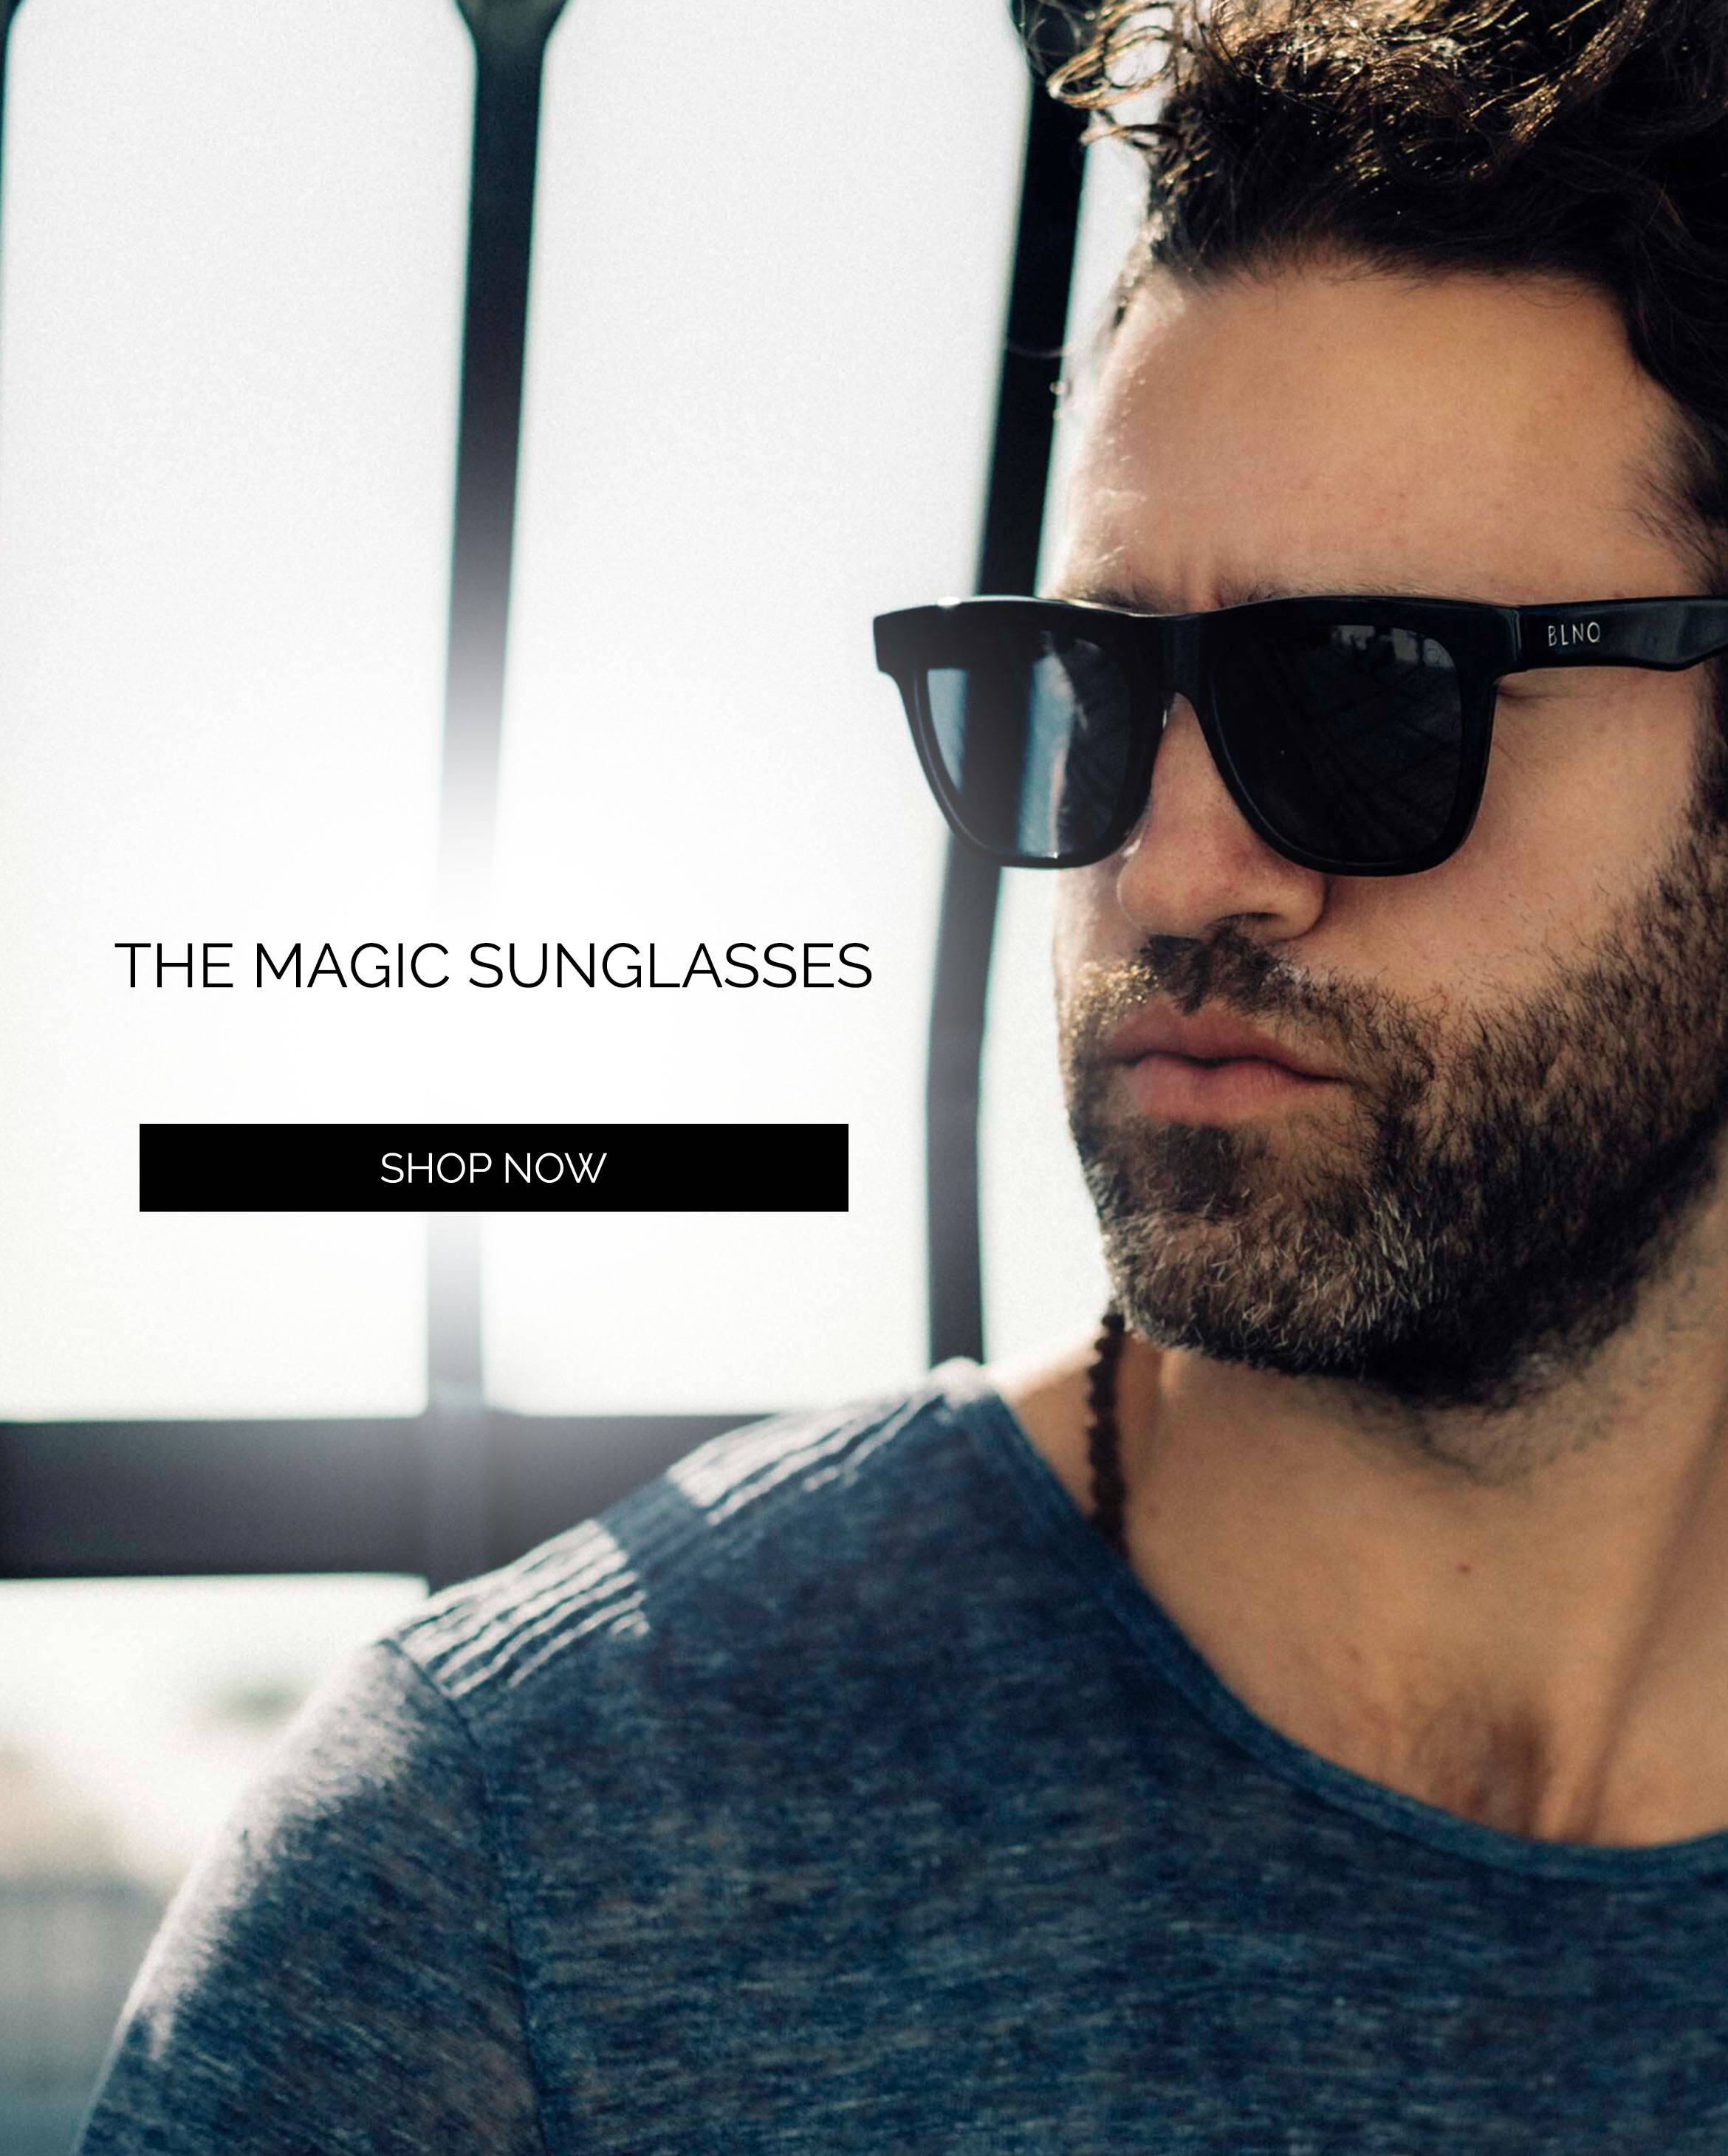 The Magic Sunglasses